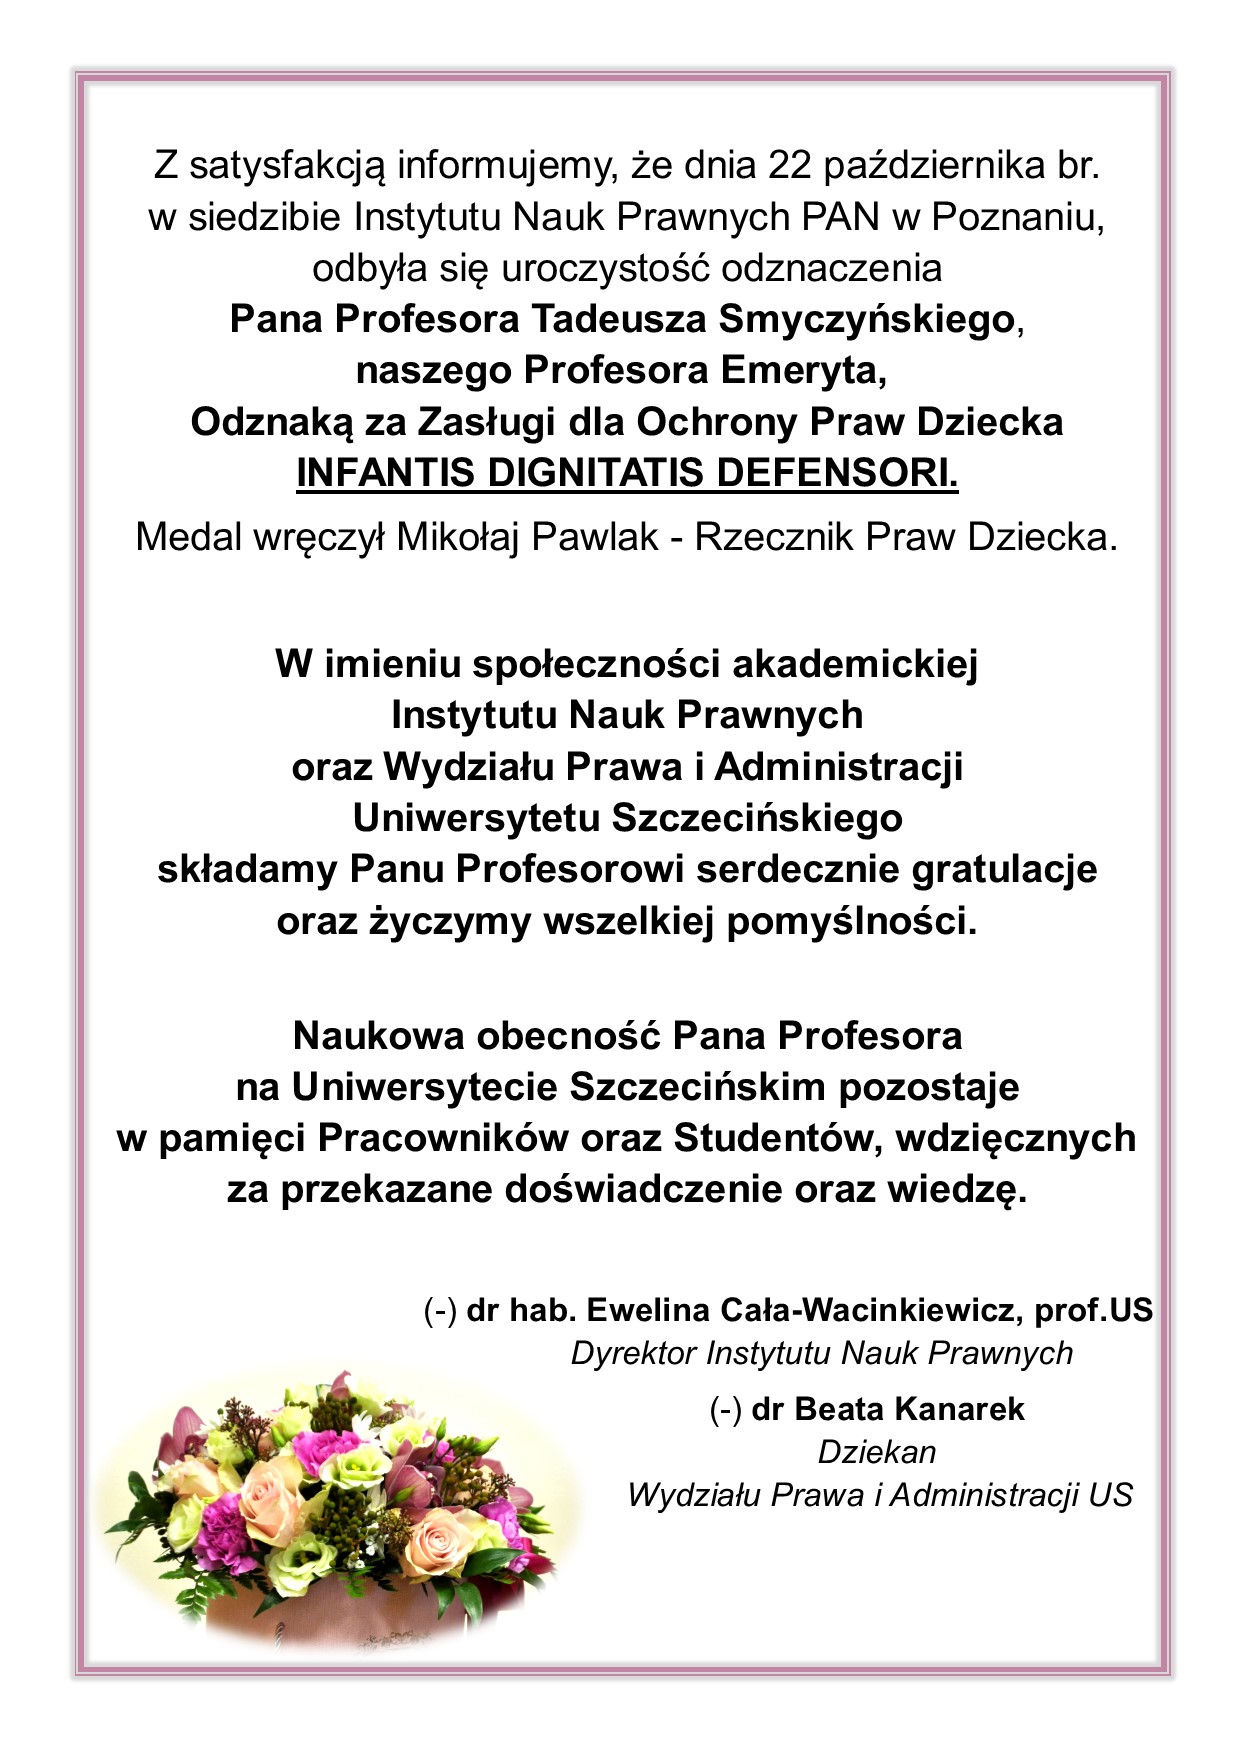 Odznaczenie dla Profesora Tadeusza Smyczyńskiego – gratulacje